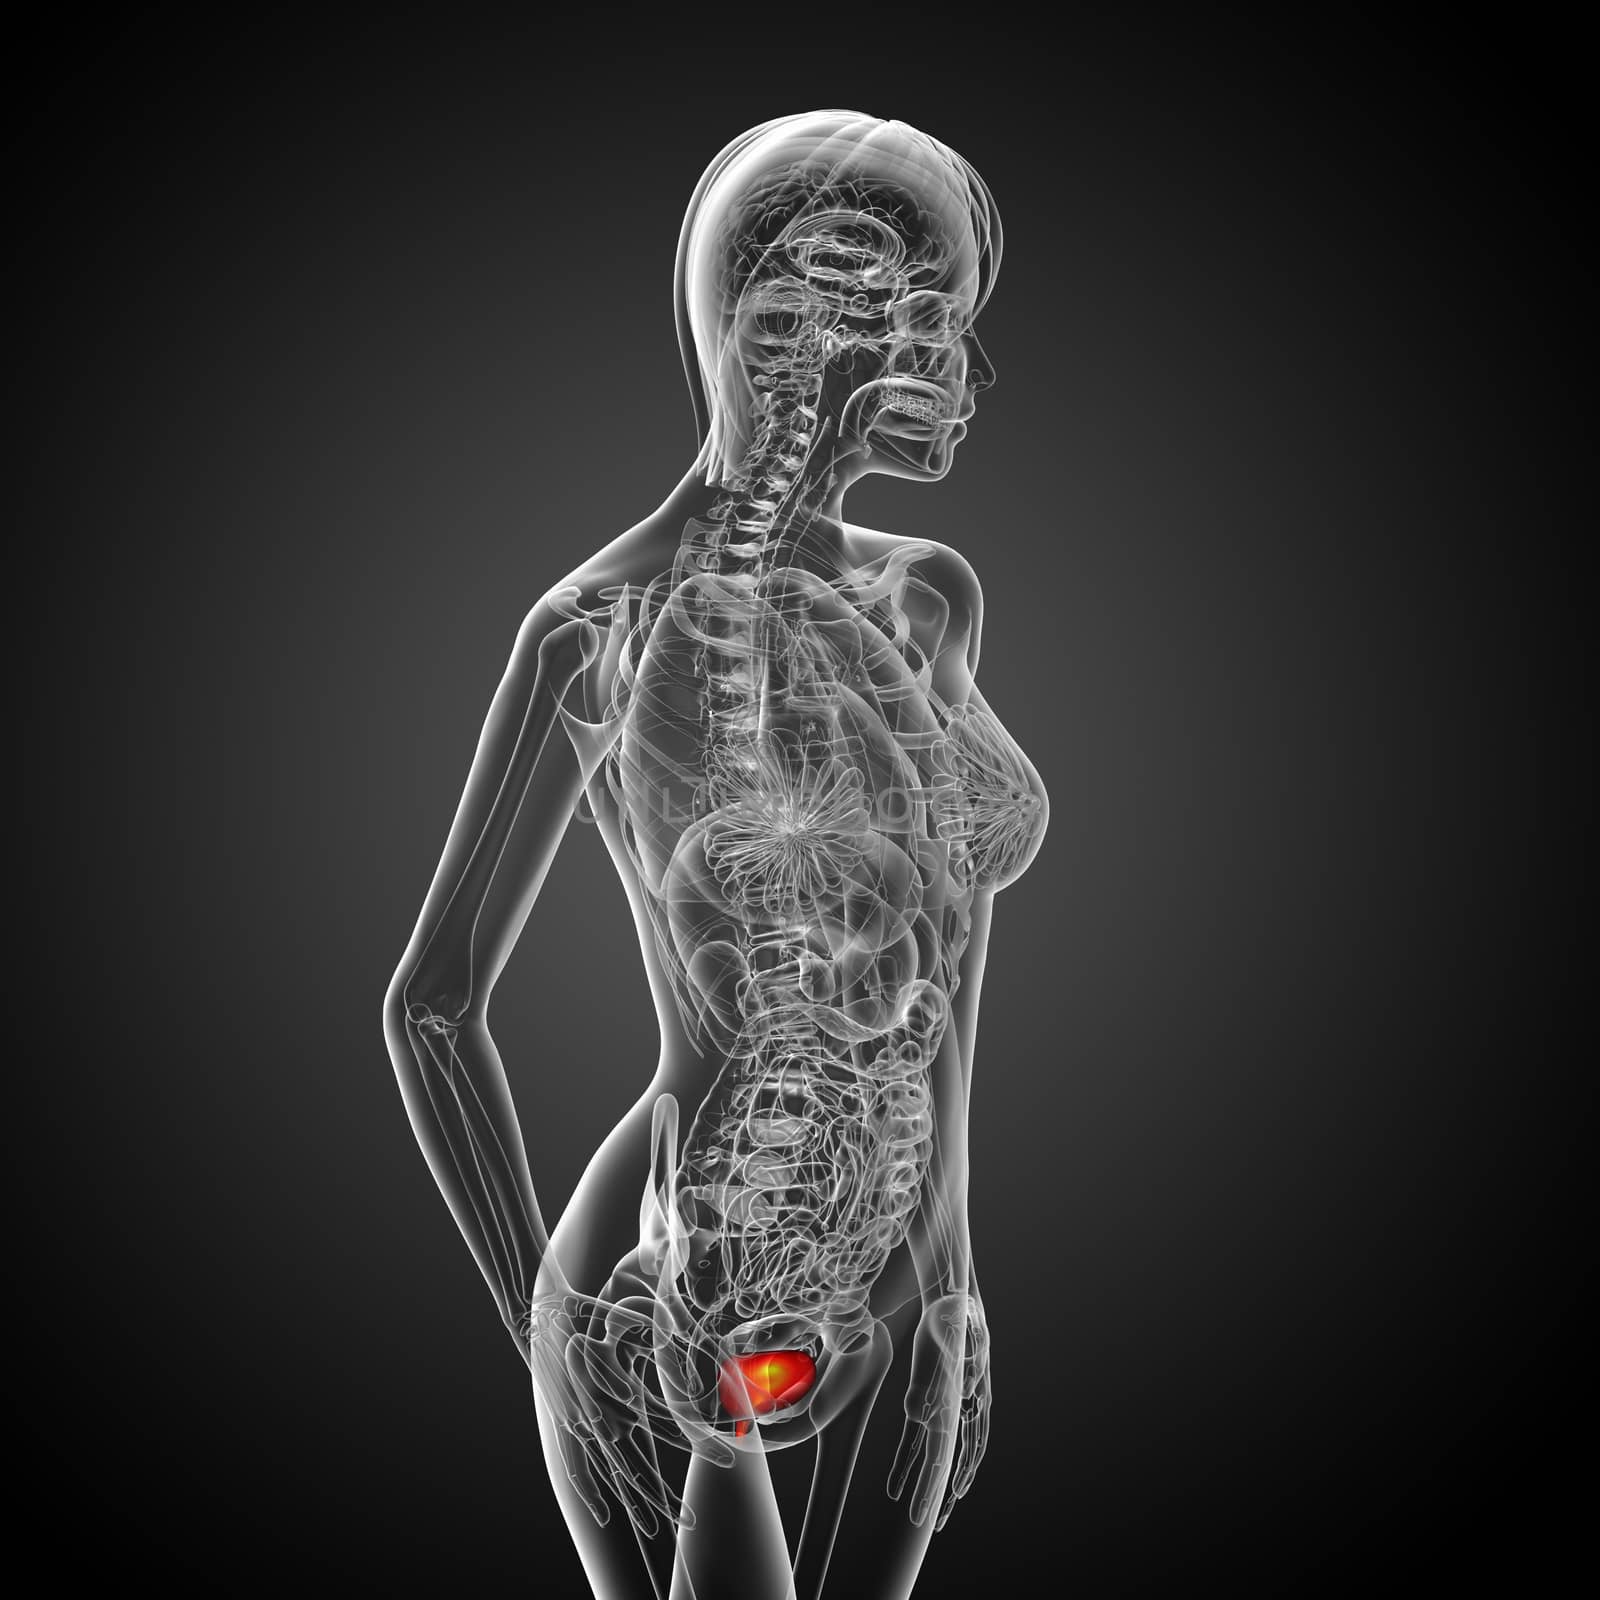 3d render medical illustration of the bladder by maya2008